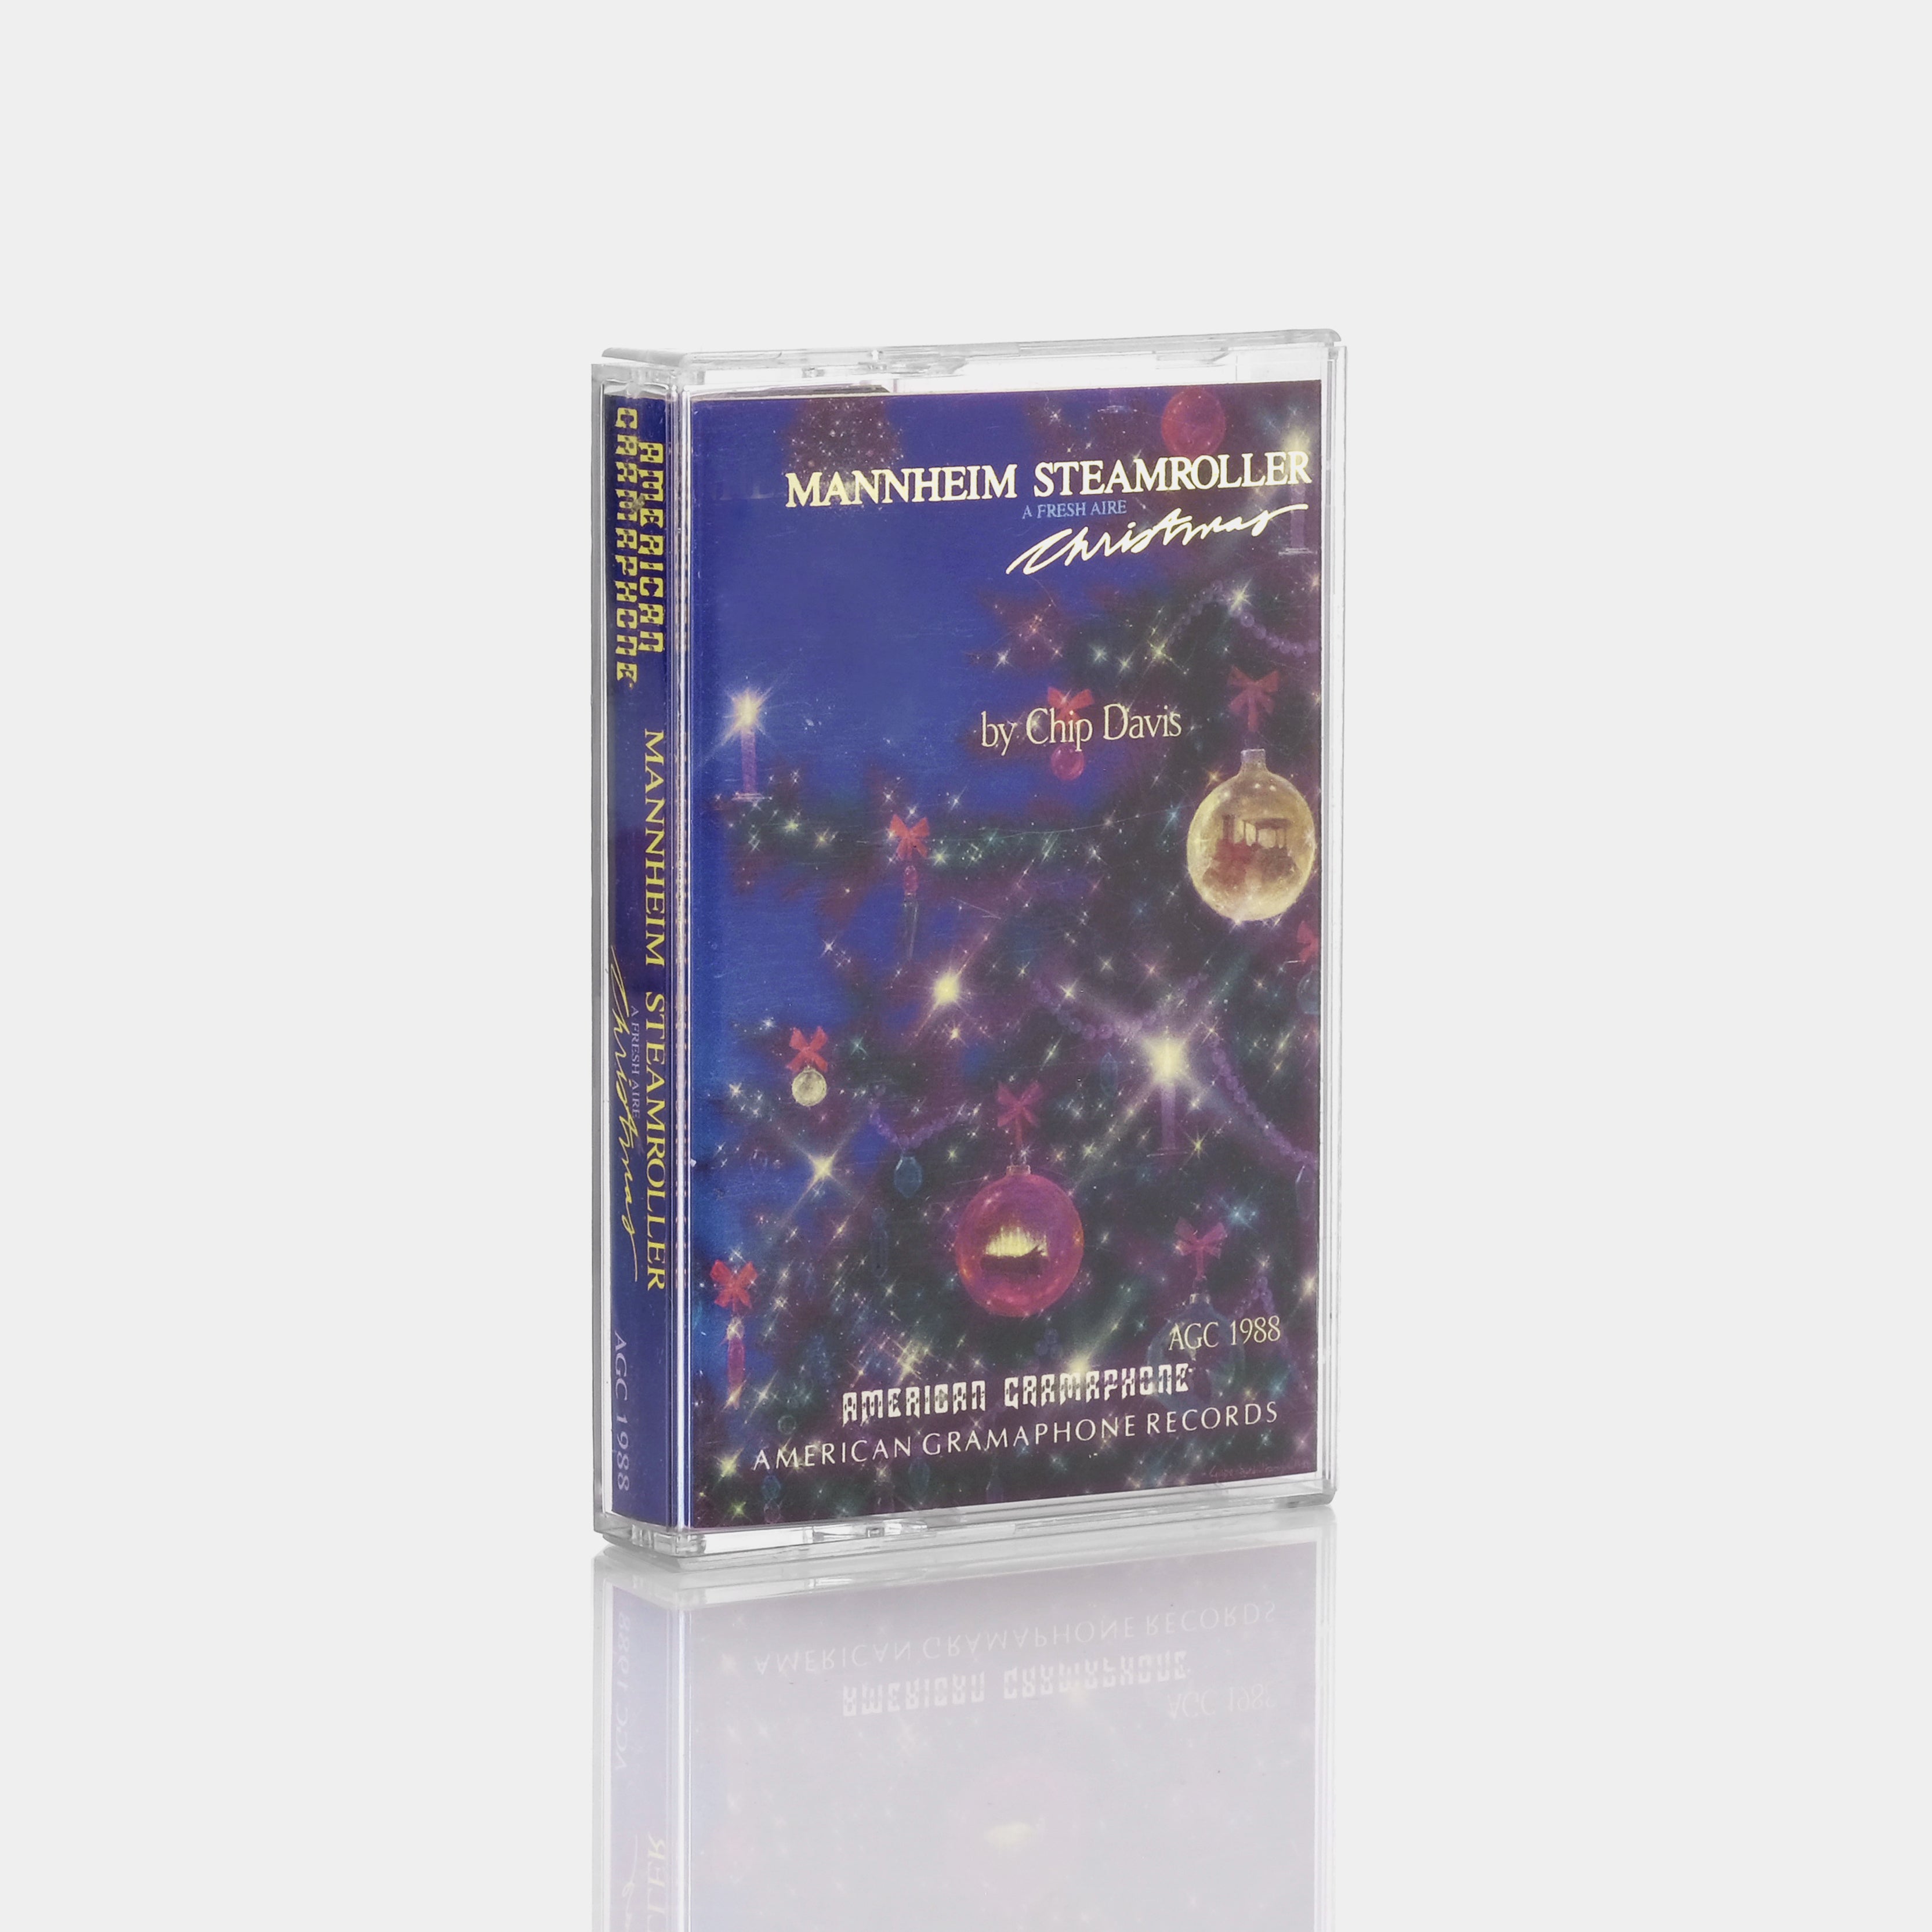 Mannheim Steamroller - A Fresh Aire Christmas Cassette Tape